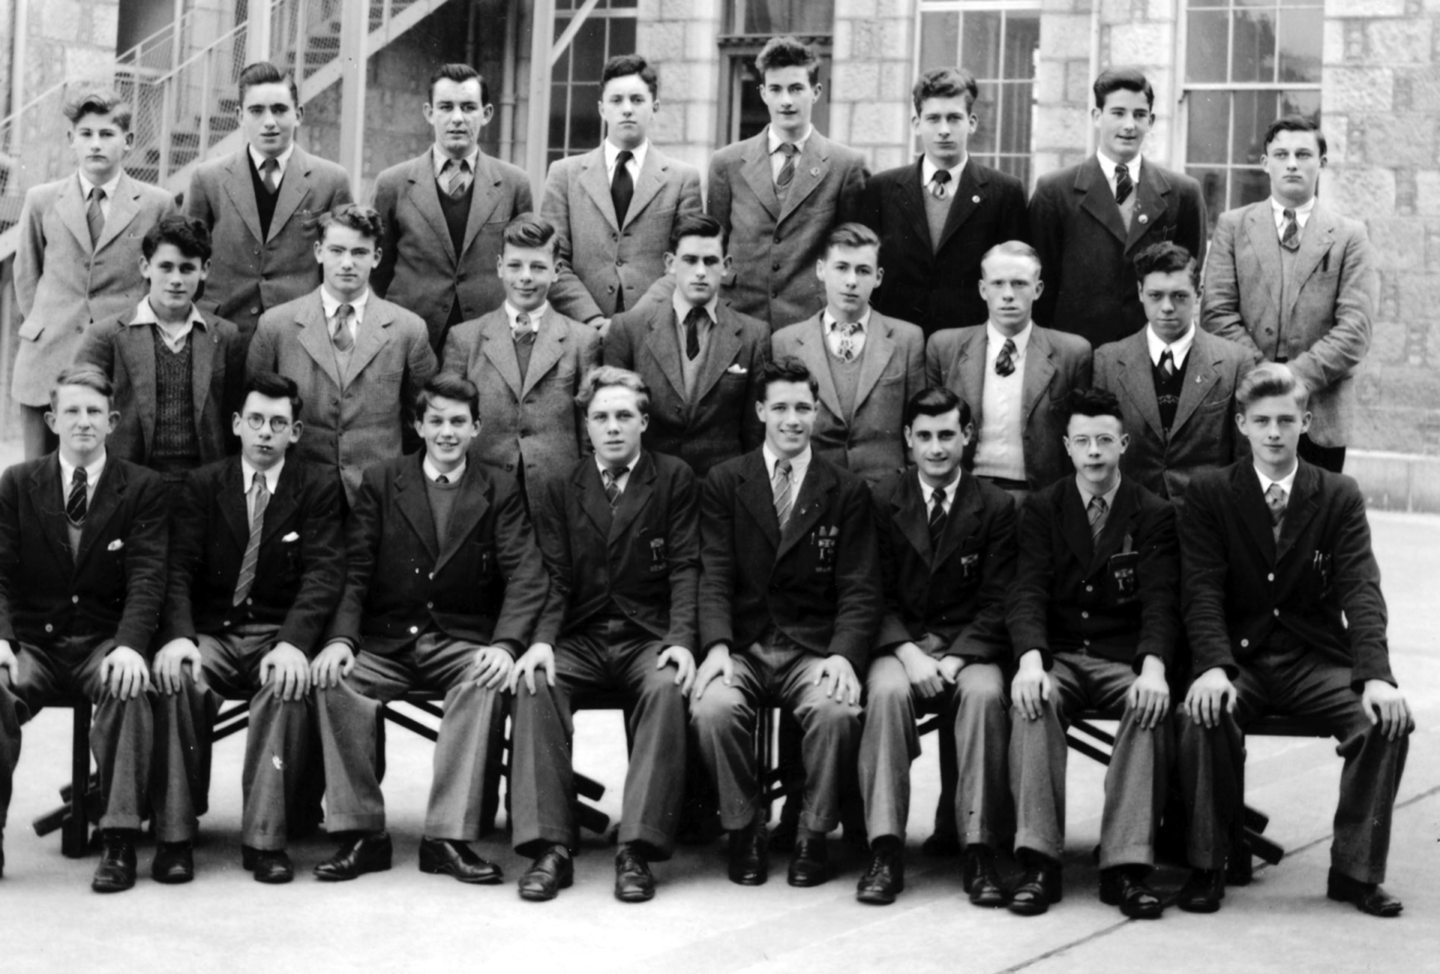 Aberdeen Grammar School Upper IV (2) class photo from 1951.